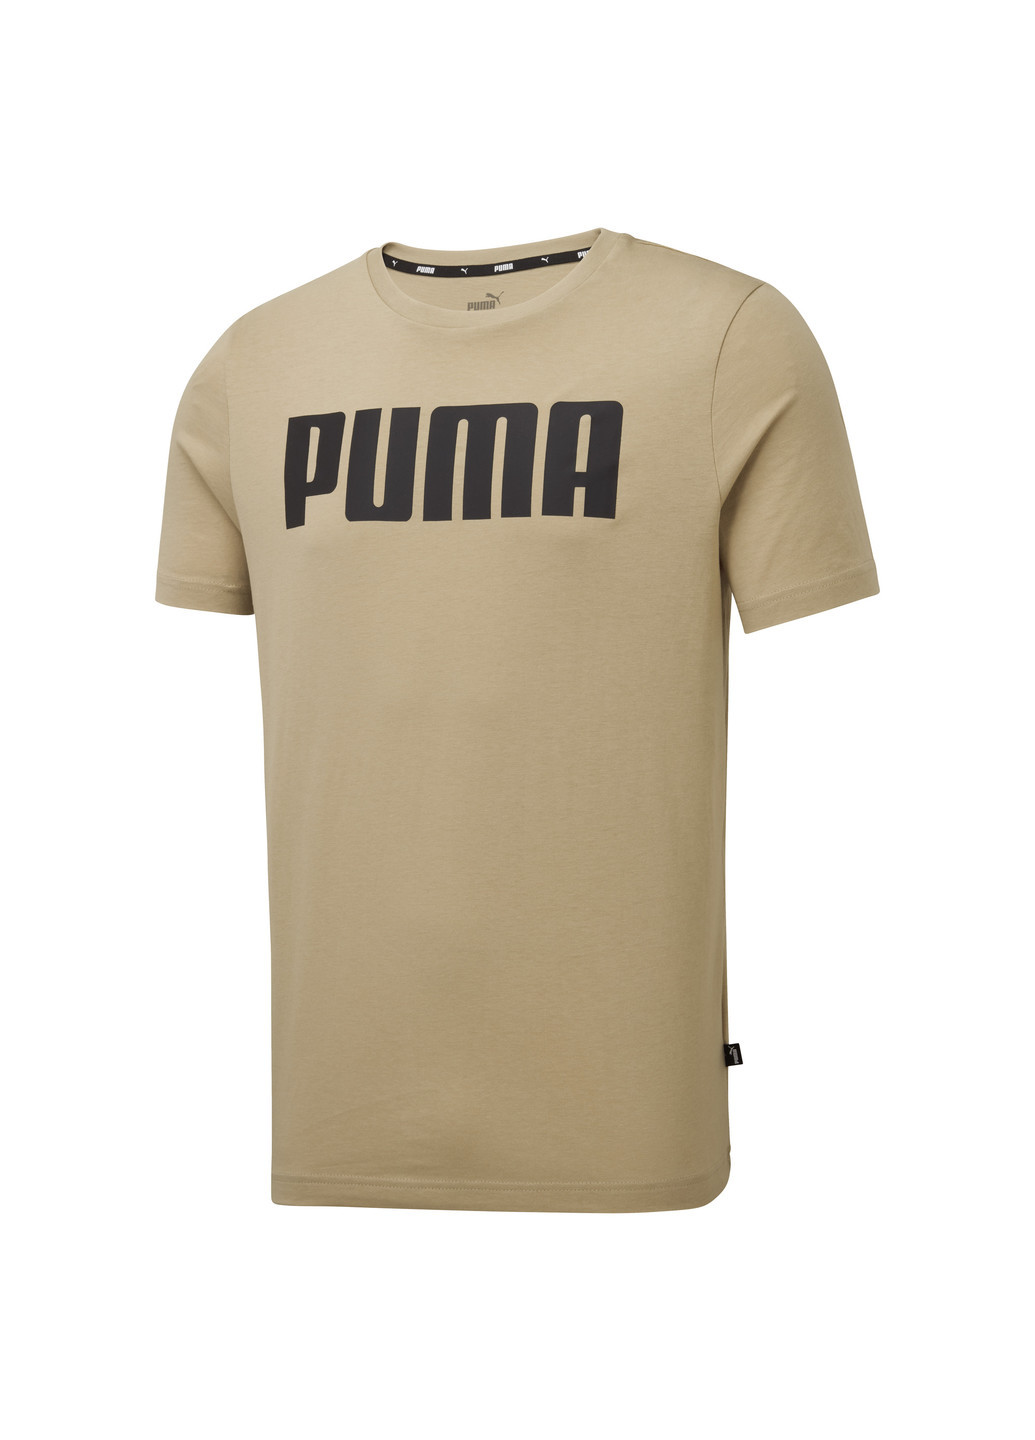 Зеленая демисезонная футболка essentials men’s tee Puma